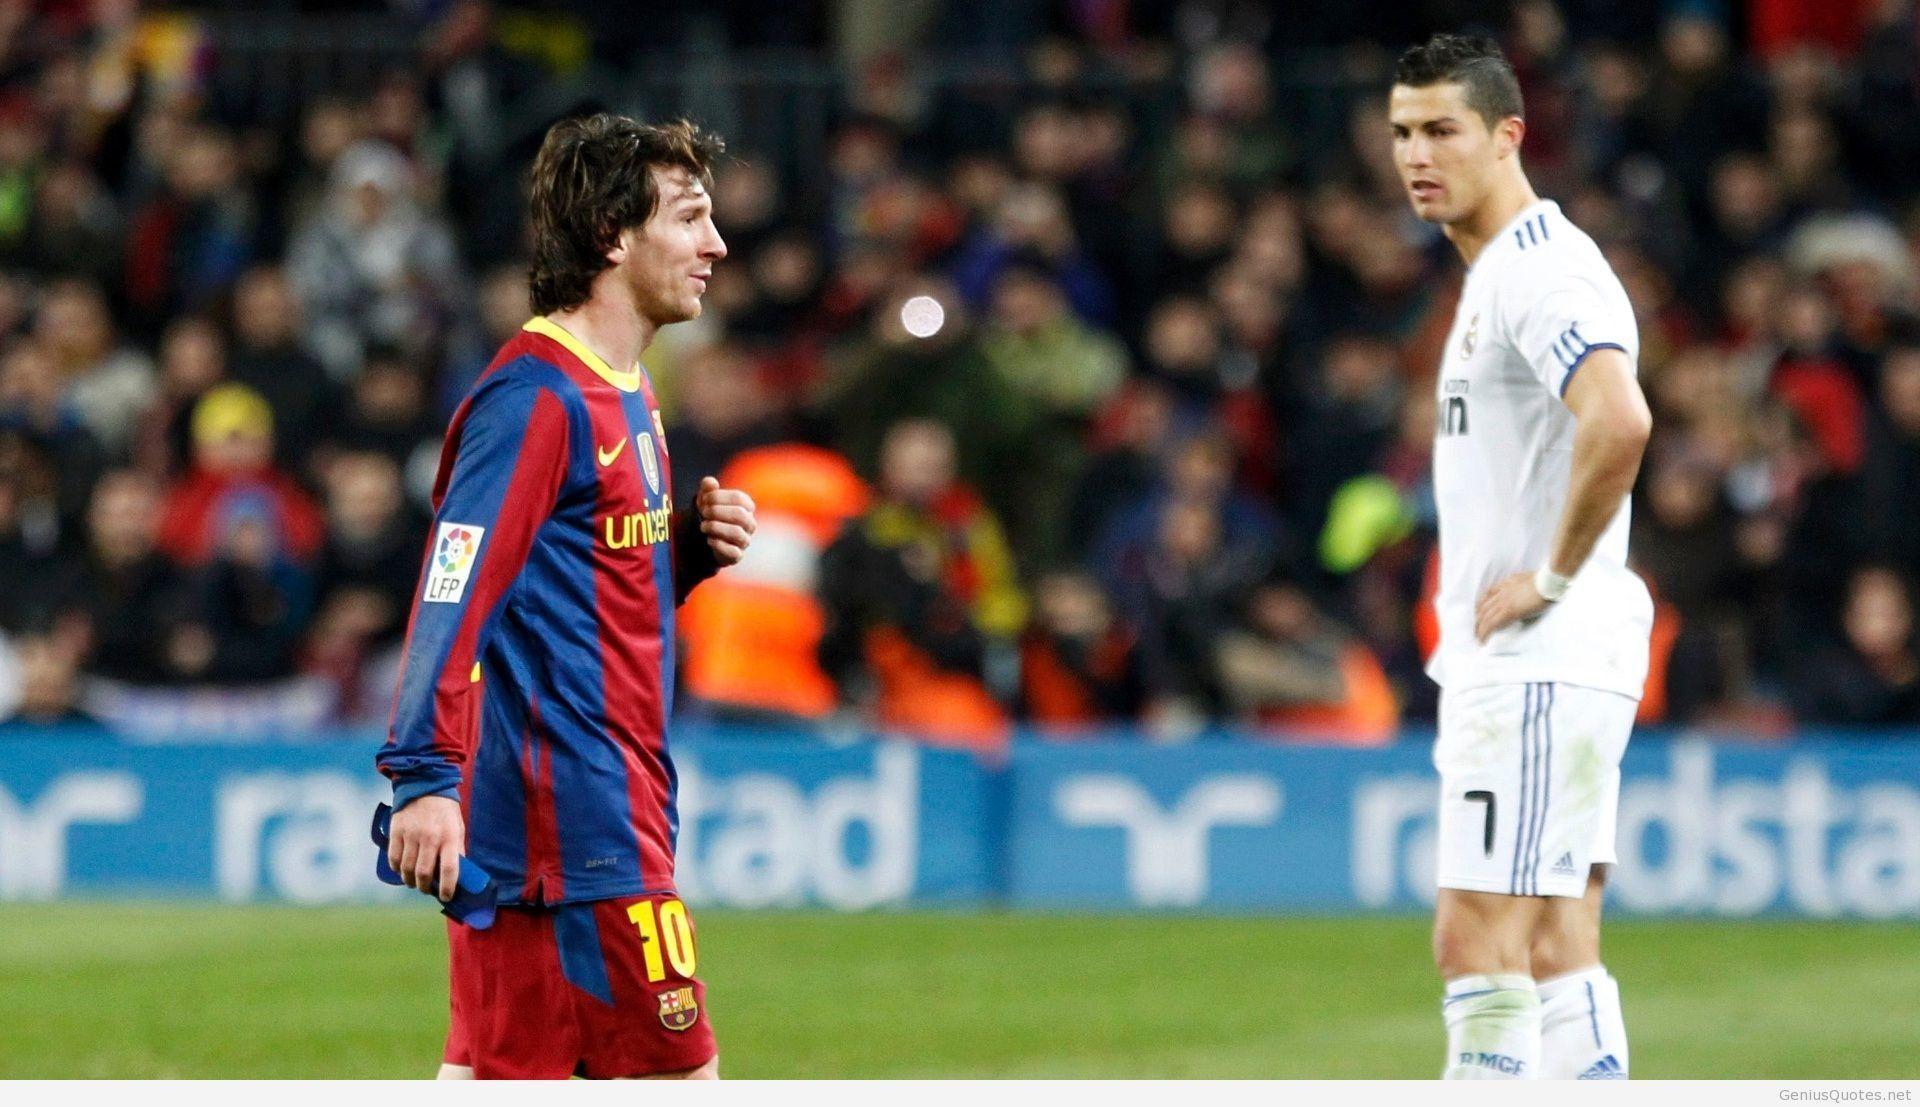 Messi vs Ronaldo Argentina vs Portugal fifa world cup 2014 new